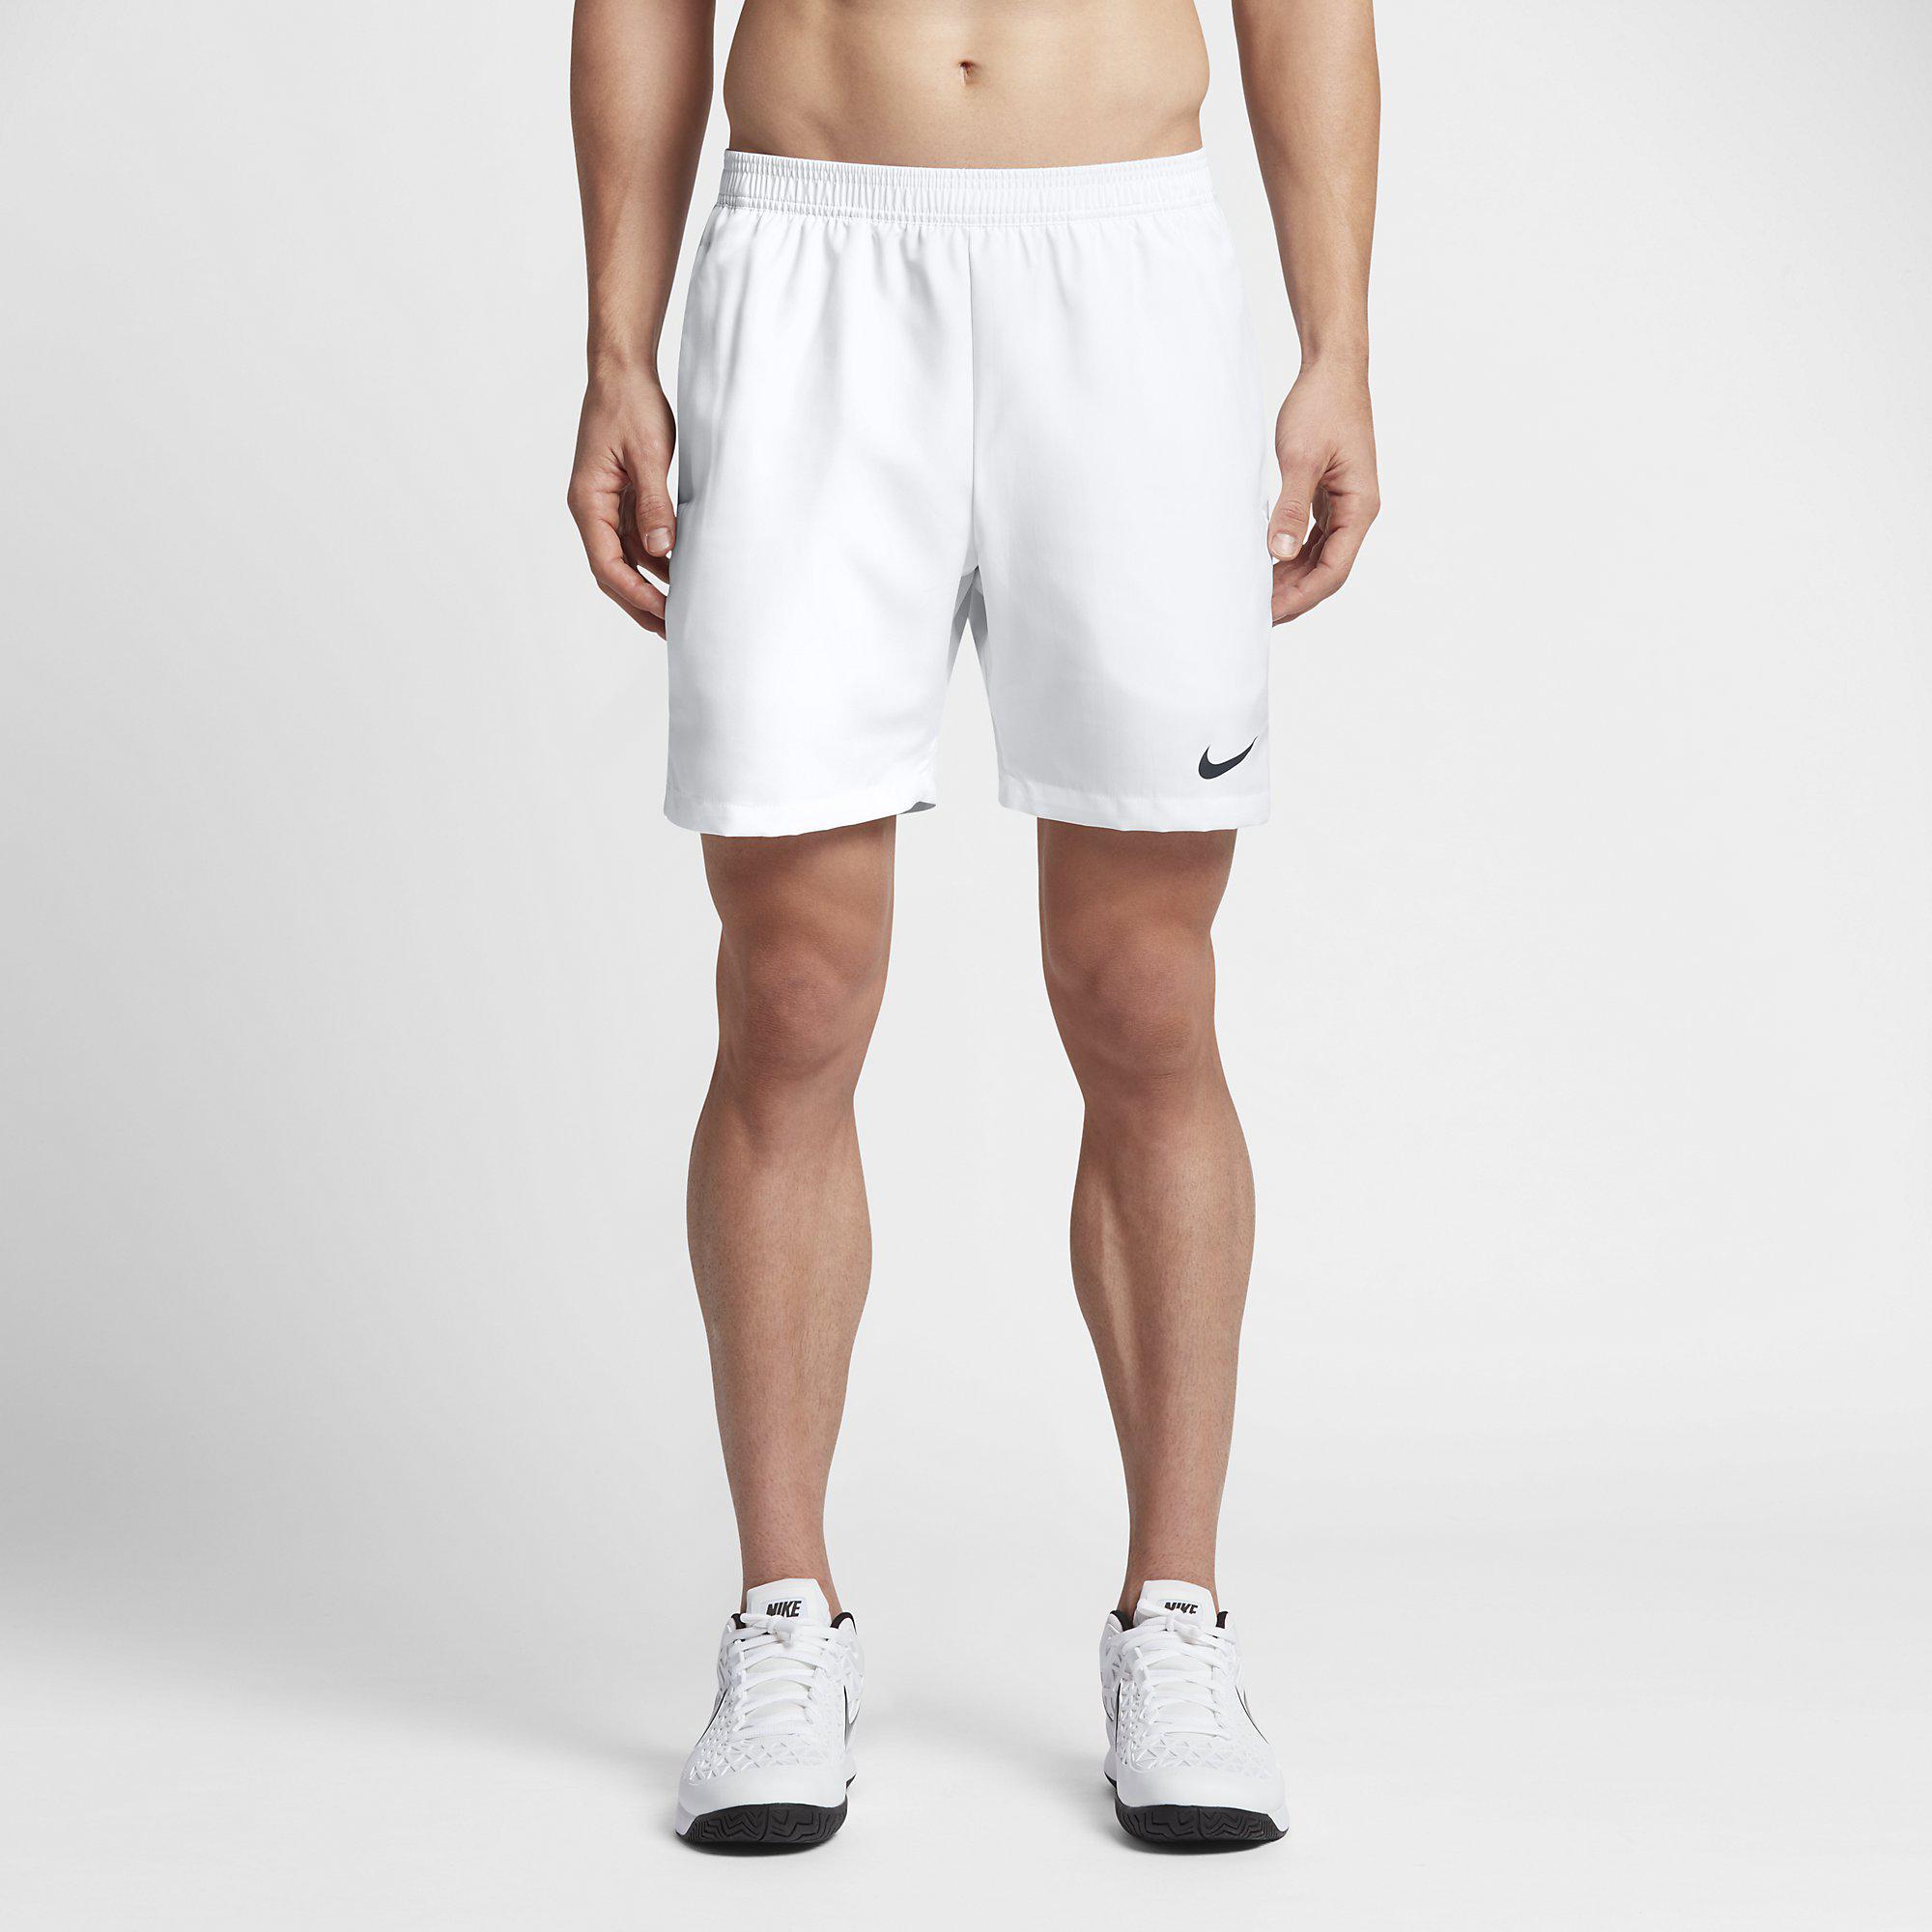 Nike Mens Dry 7 Inch Tennis Shorts - White - Tennisnuts.com